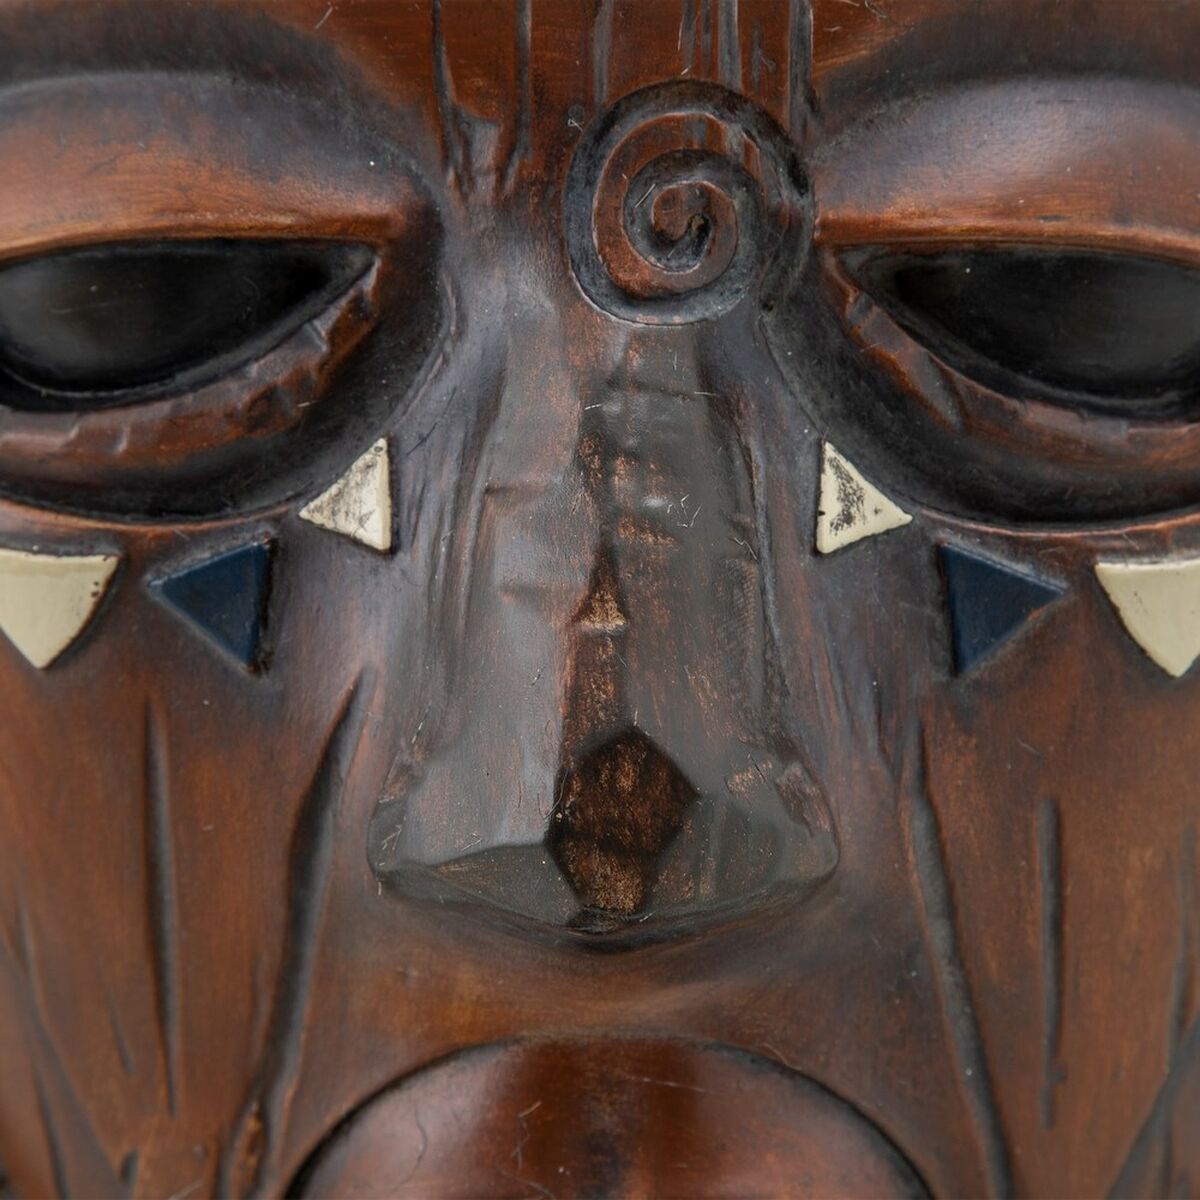 Afrikansk shaman 29 x 20 x 69,5 cm